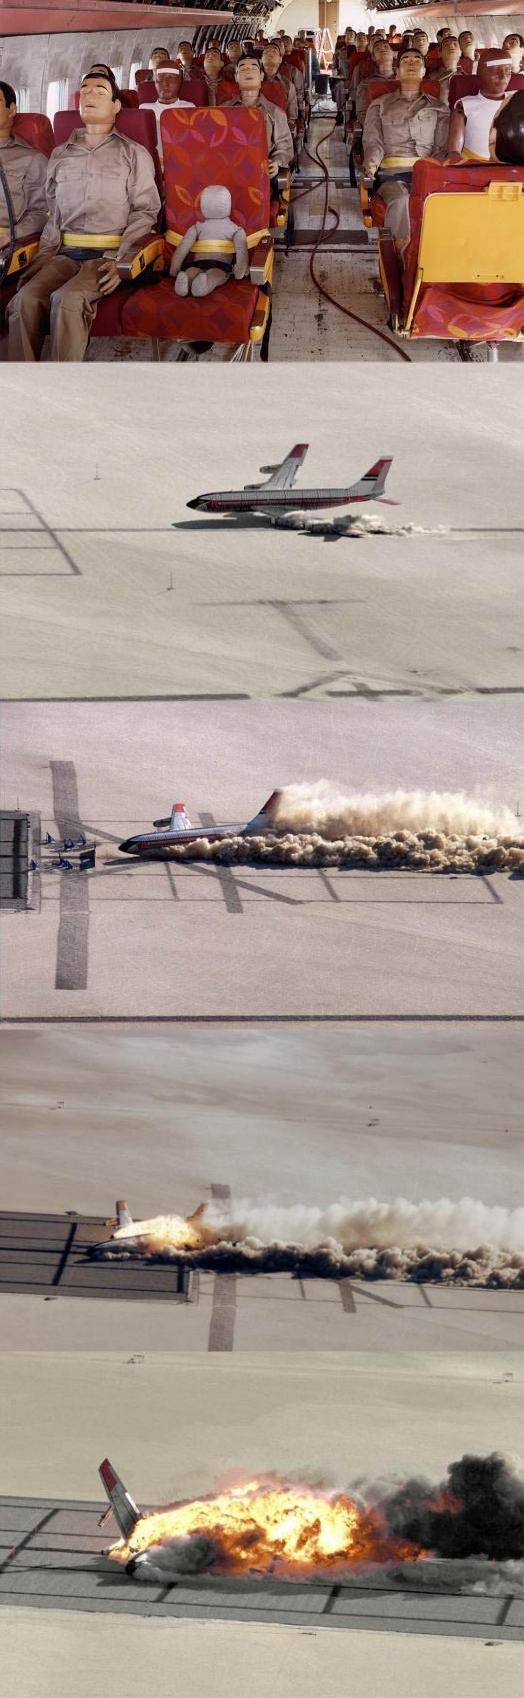 Obrázek plane crash test